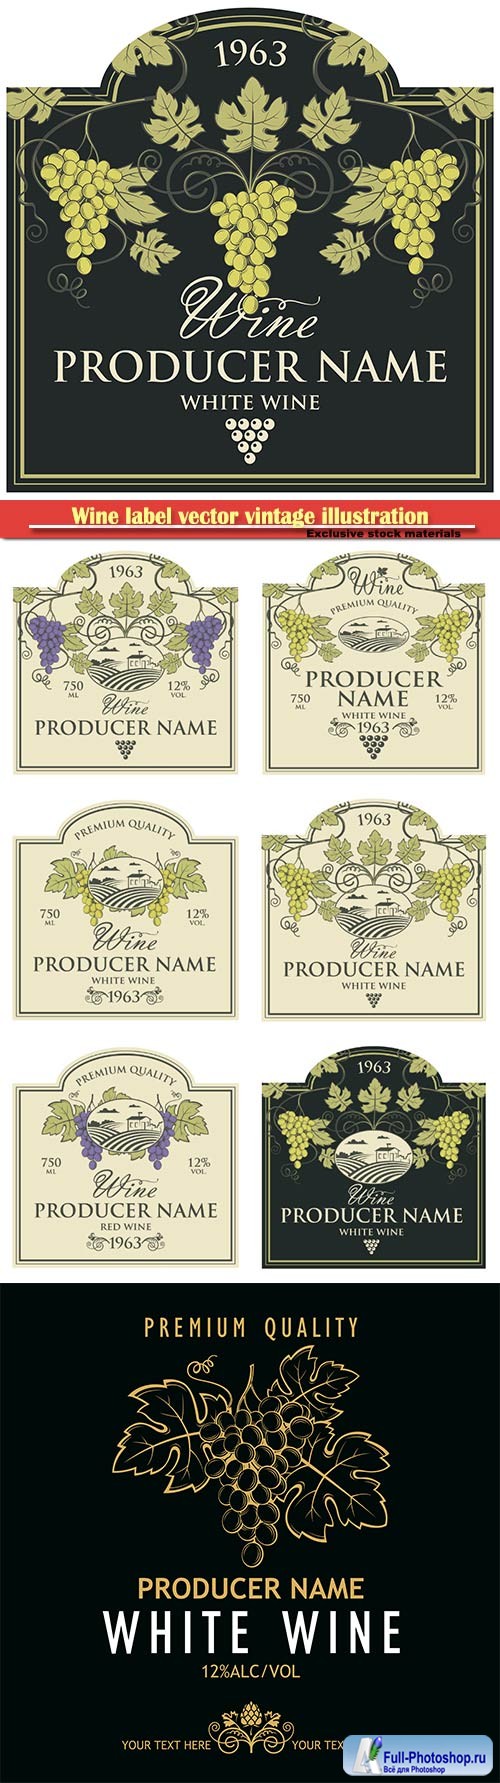 Wine label vector vintage illustration